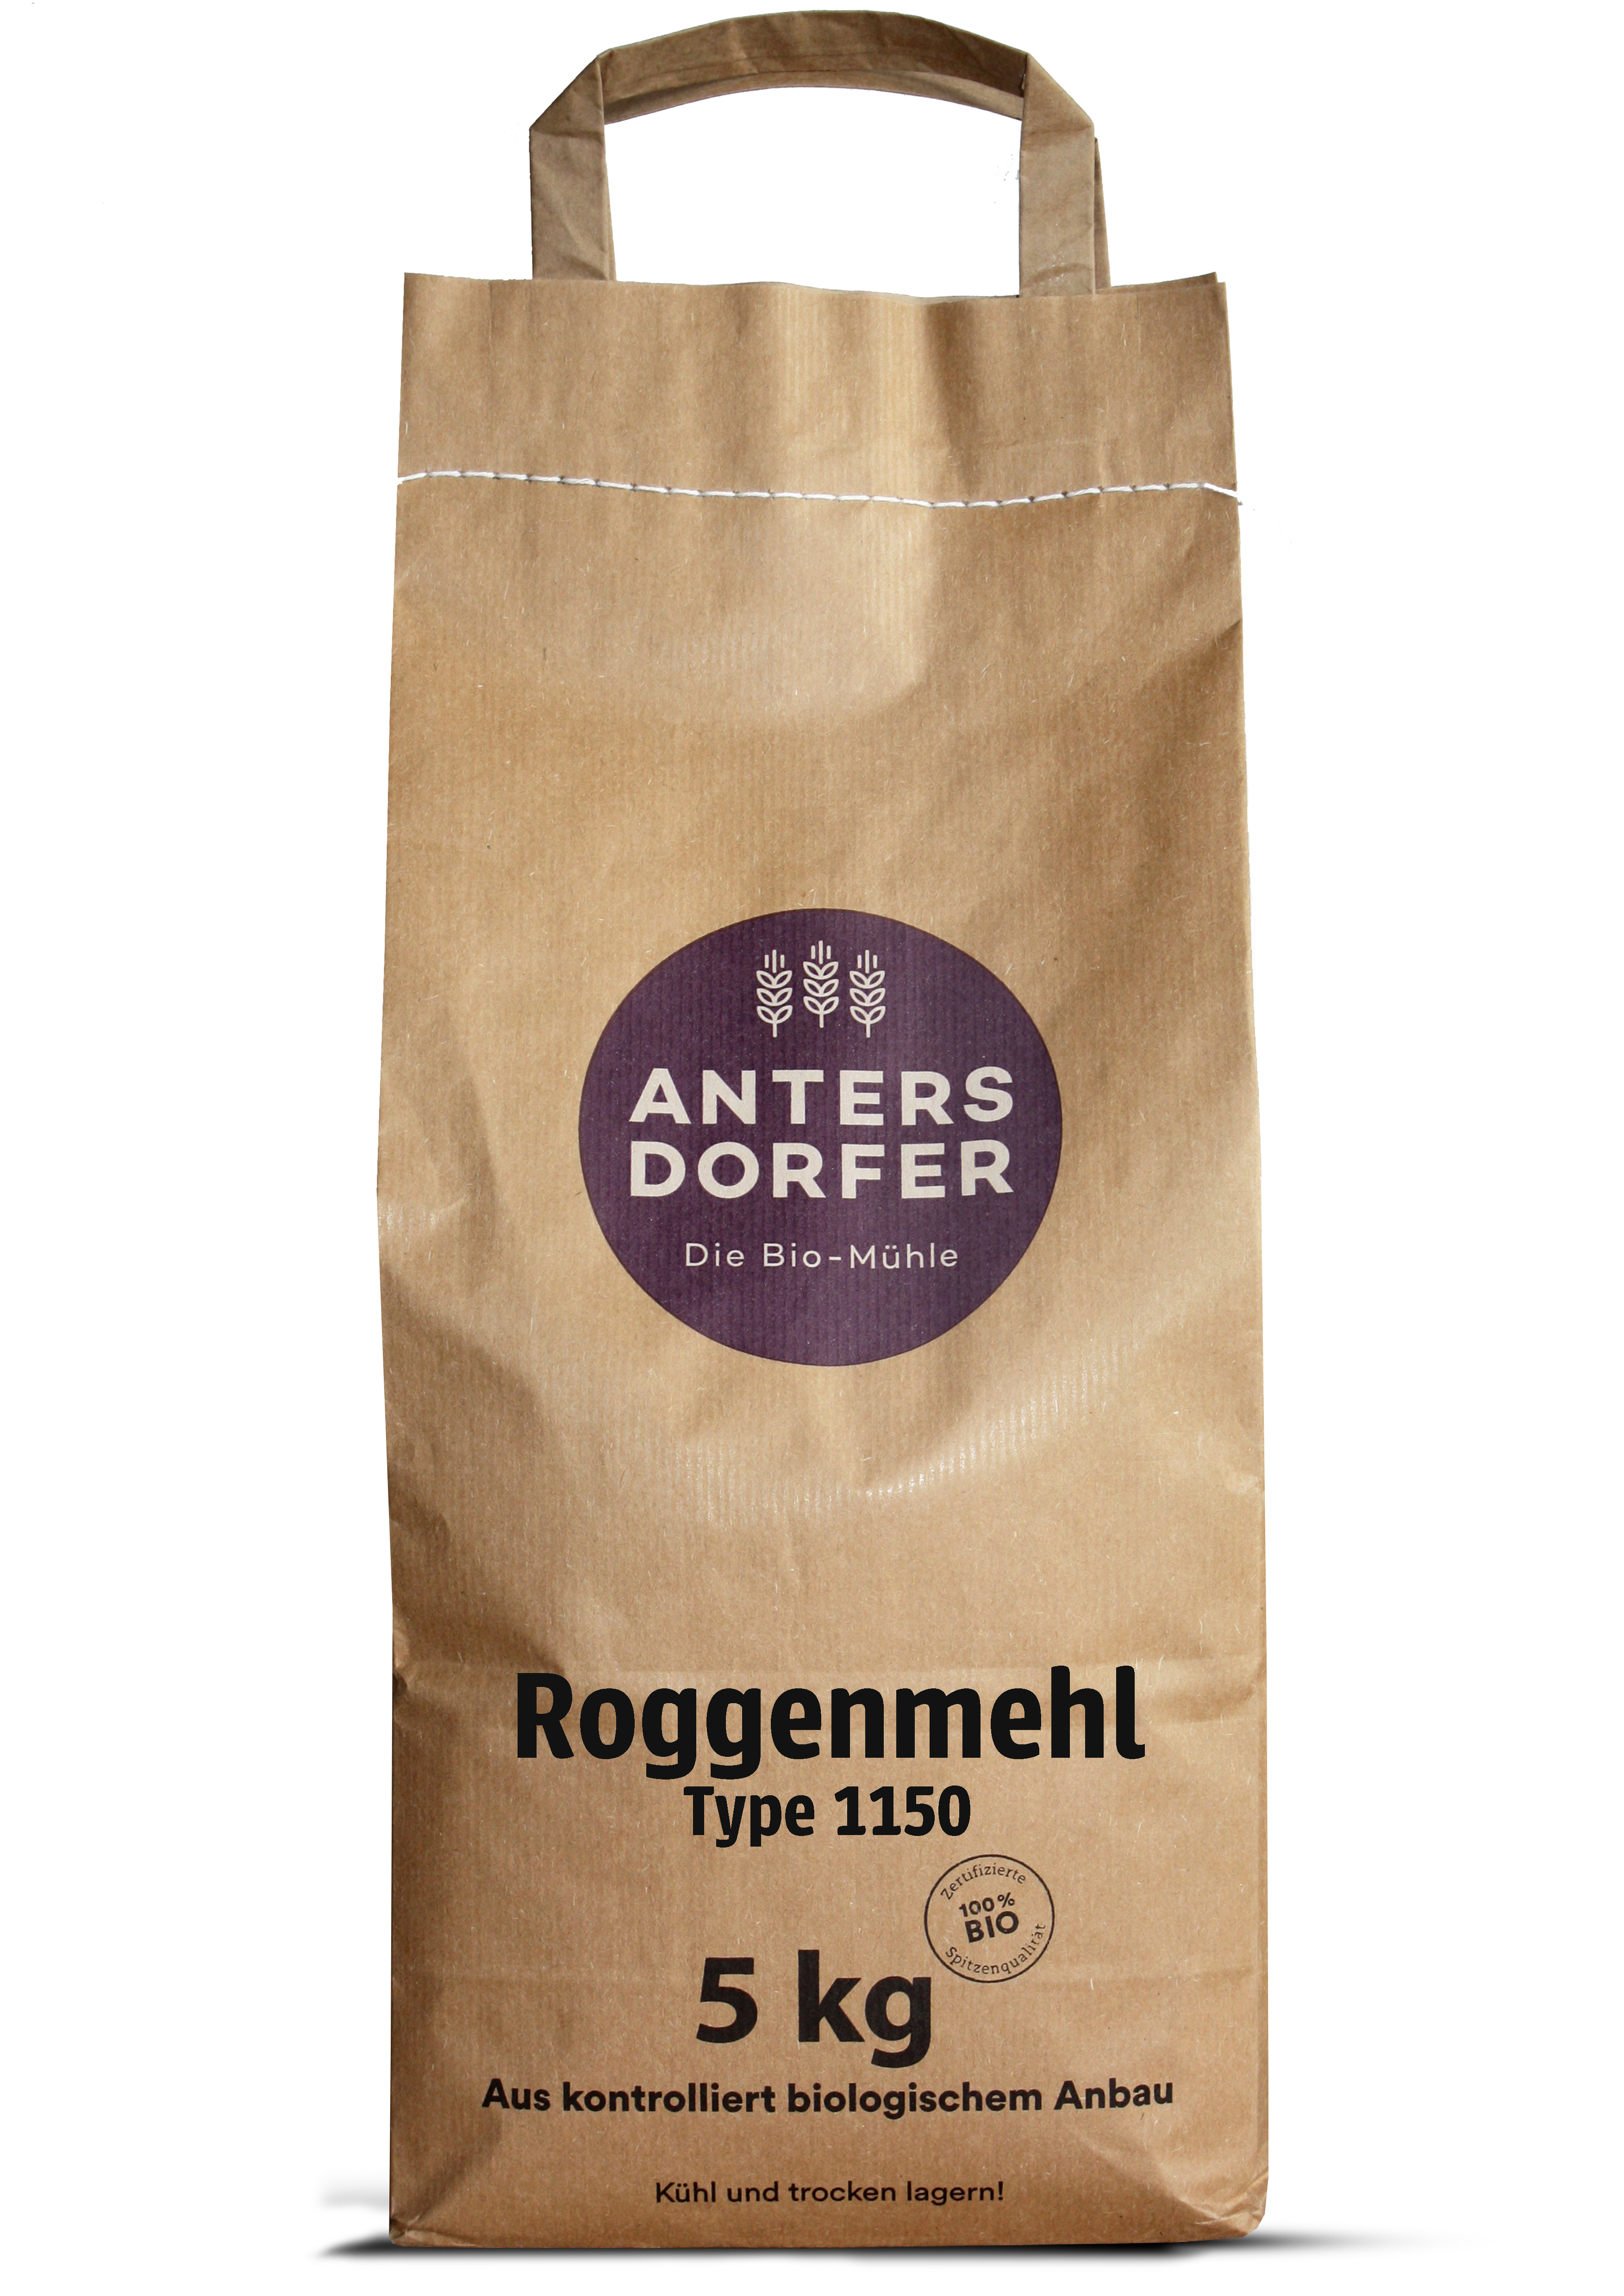 Roggenmehl Type 1150